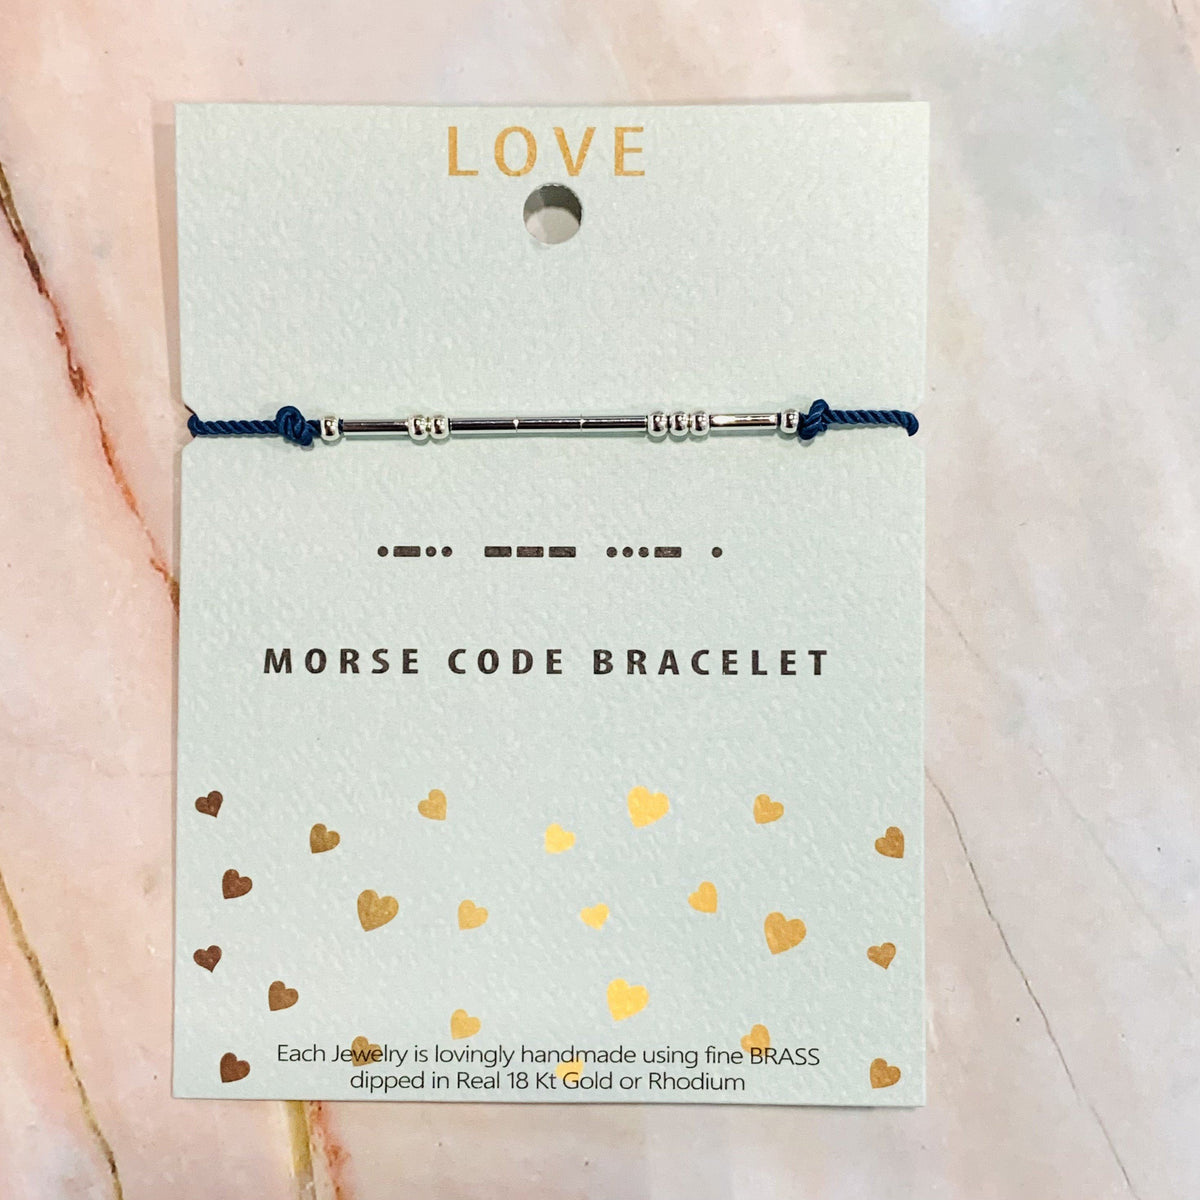 Morse Code Bracelet Lauren-Spencer Love 